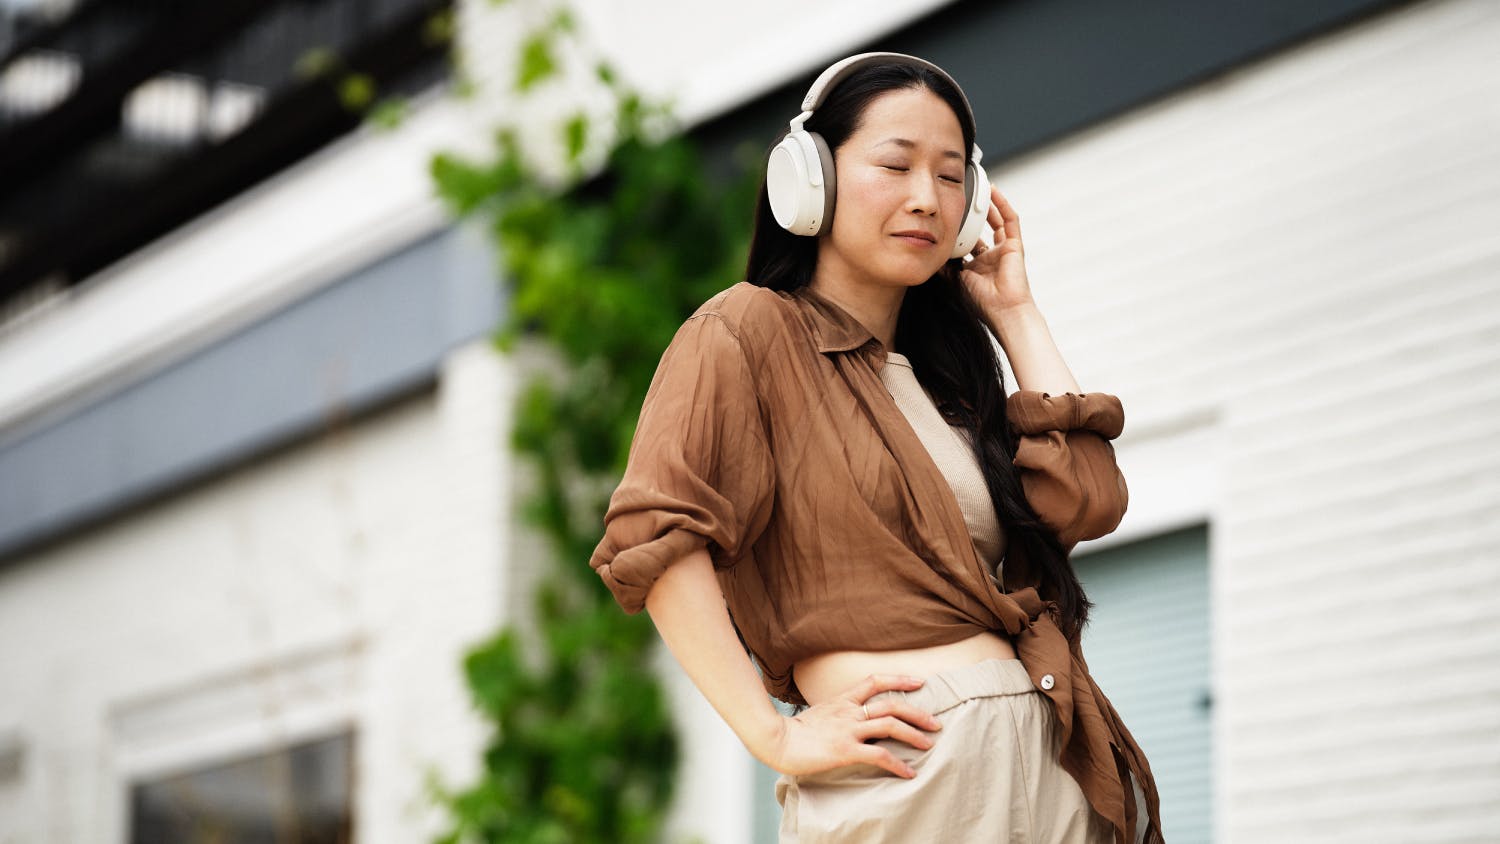 Sennheiser MOMENTUM 4 Wireless Noise Cancelling Over-Ear Headphones - White